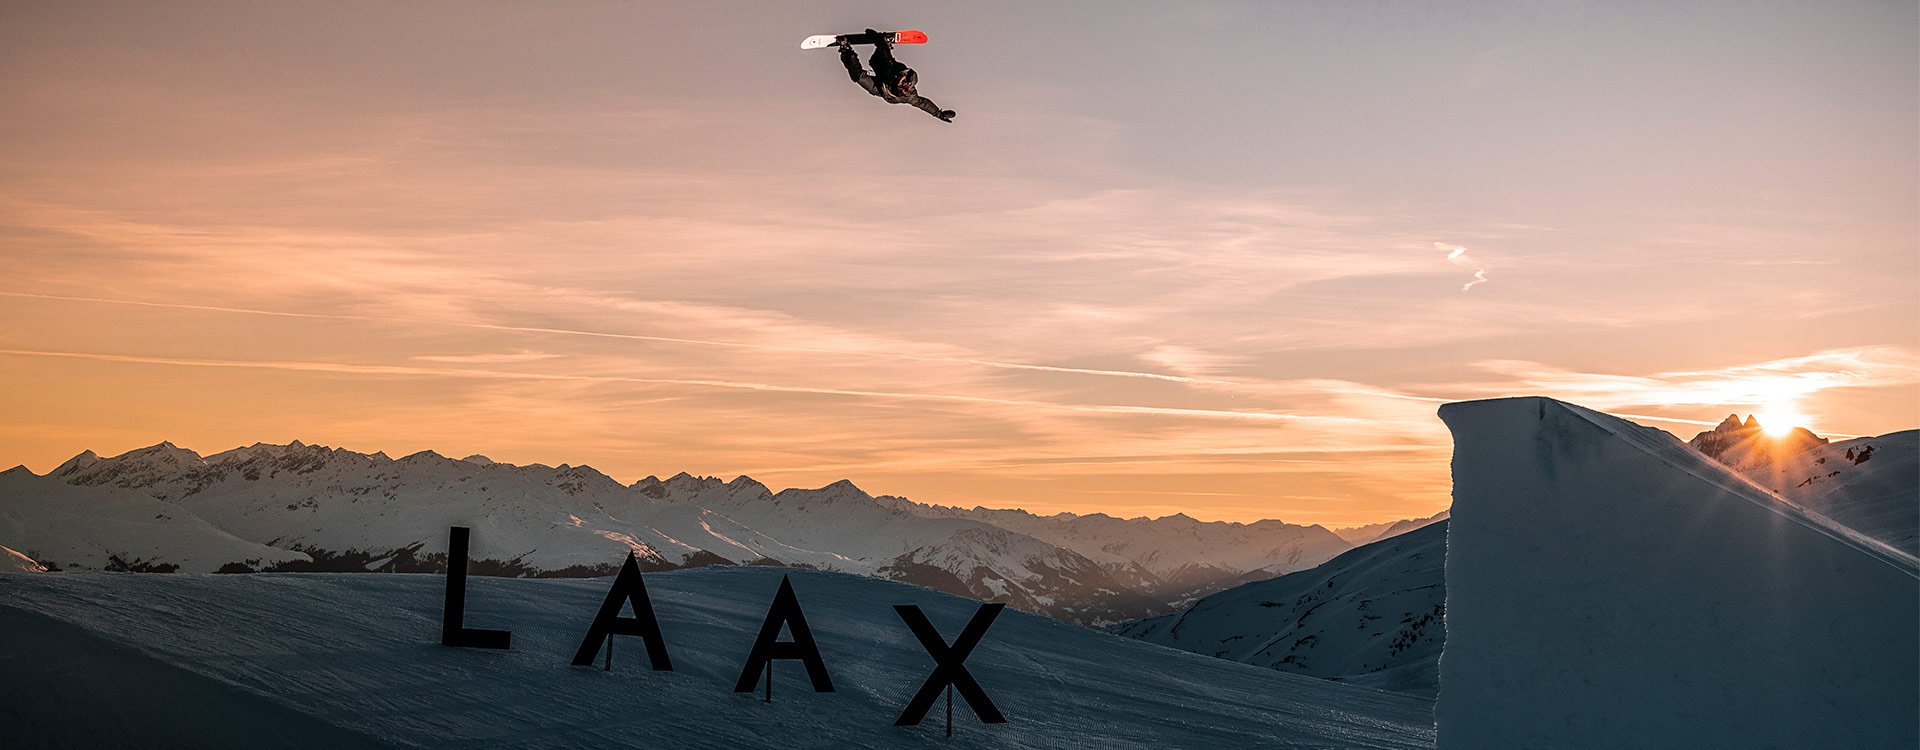 Snowpark, Sunset, Laax, Skigebiet Flims, Schweiz, Freestyle